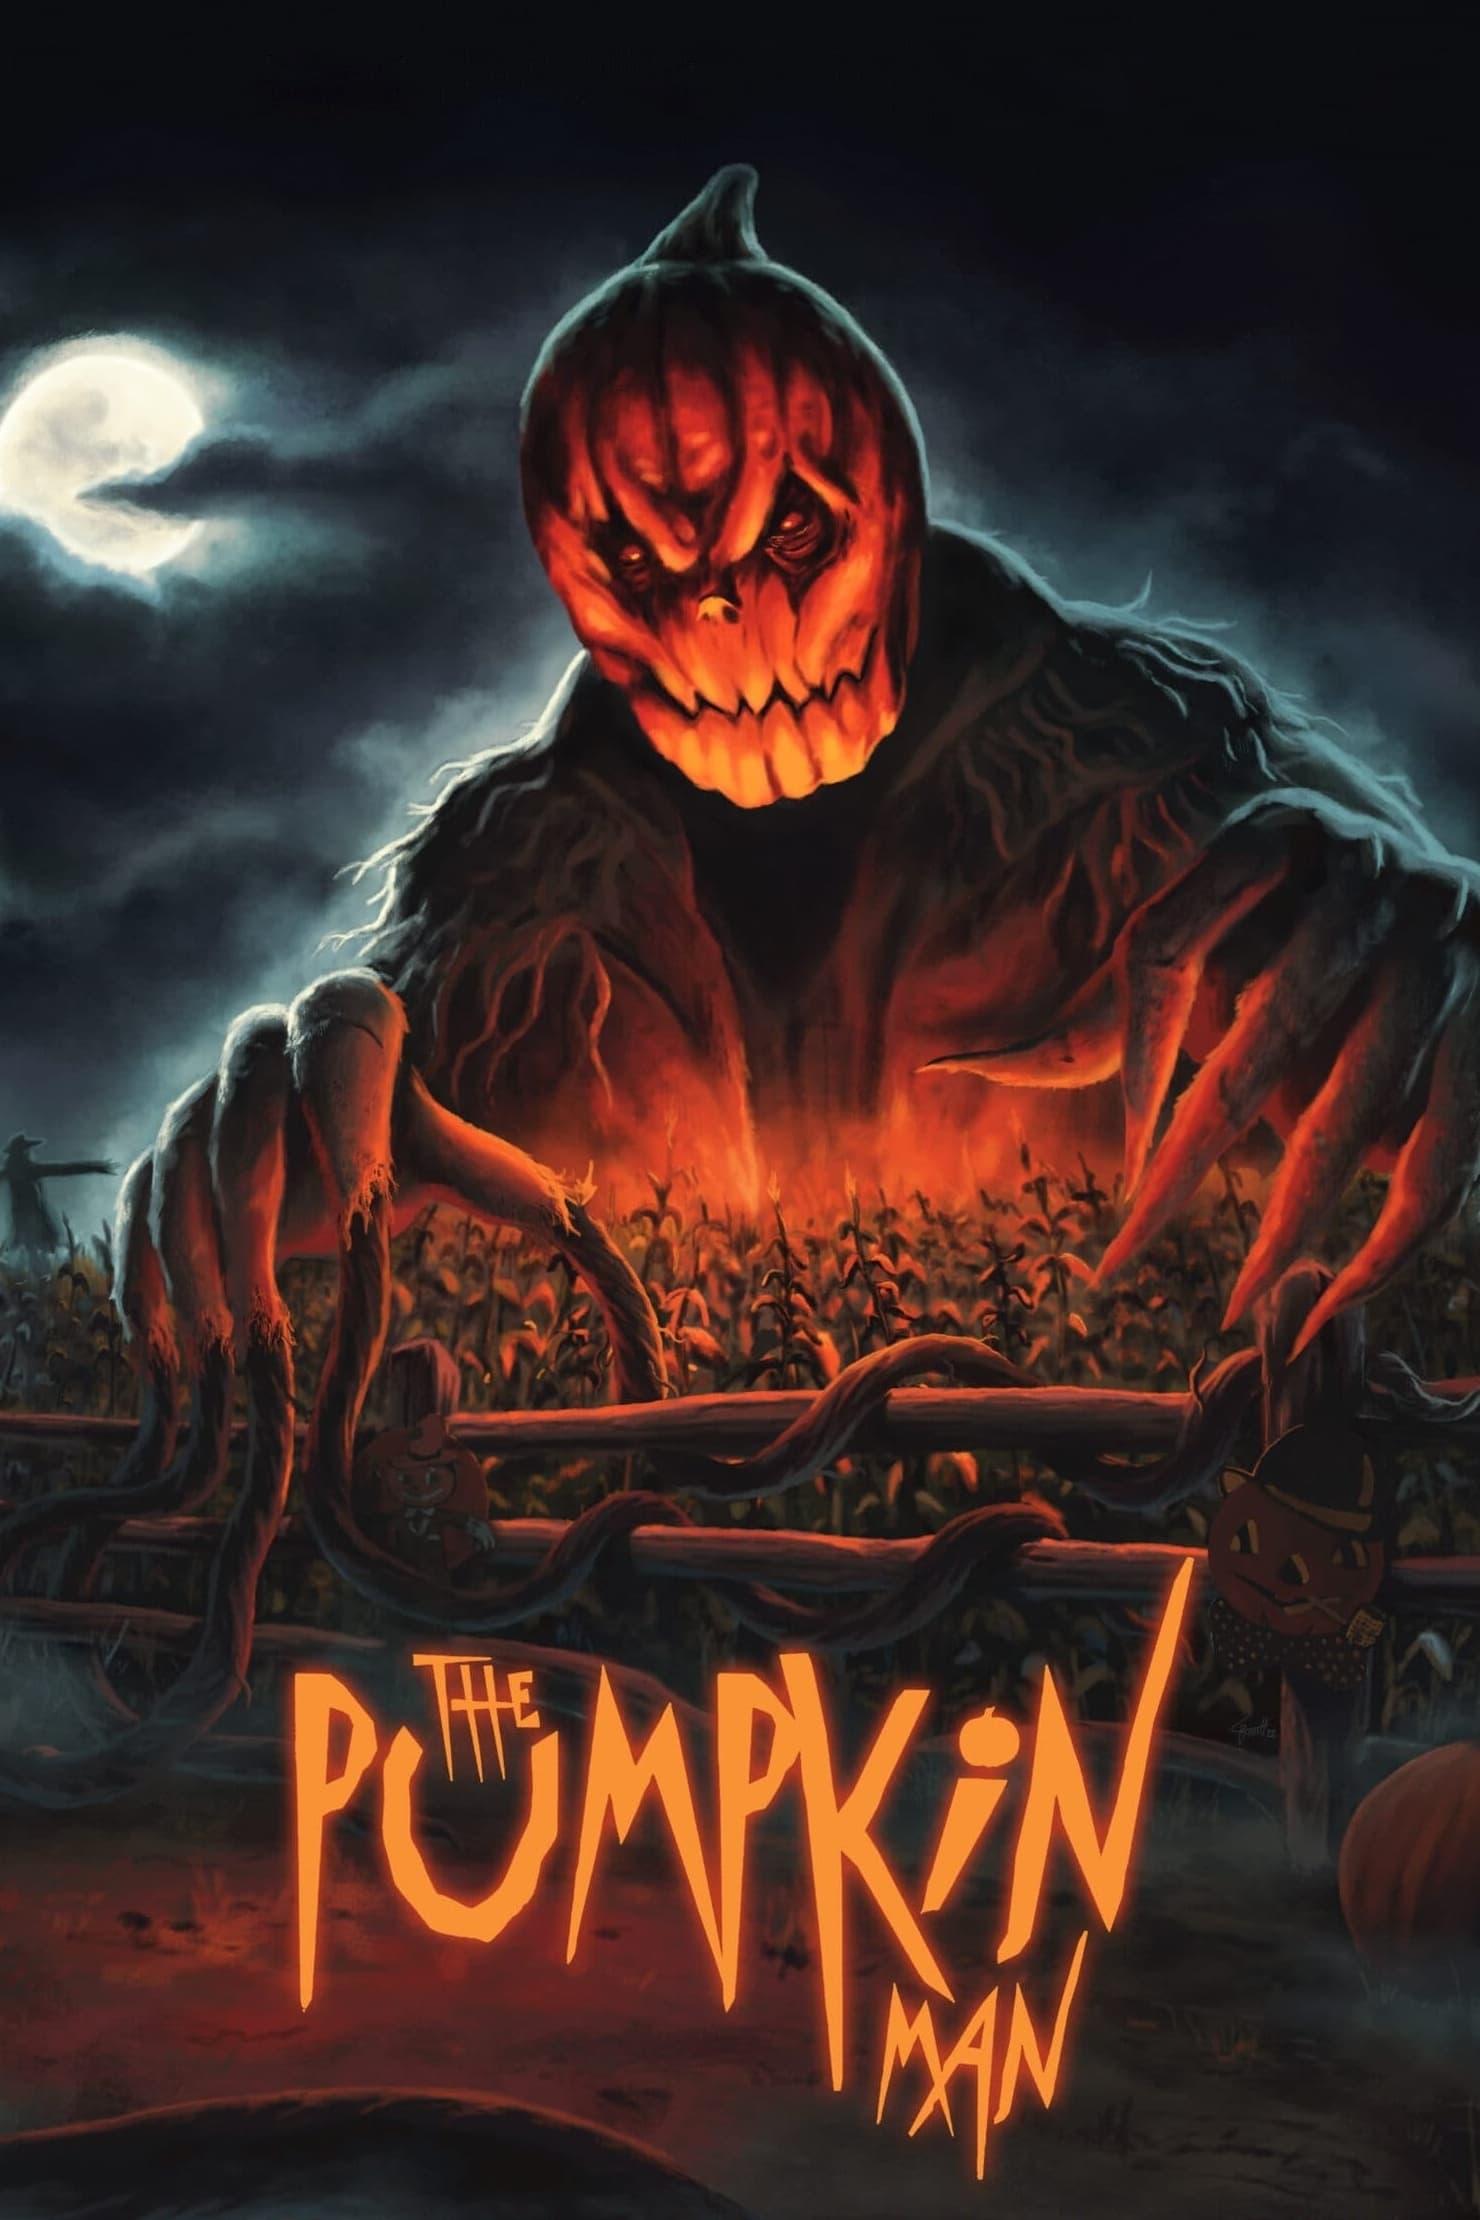 The Pumpkin Man poster